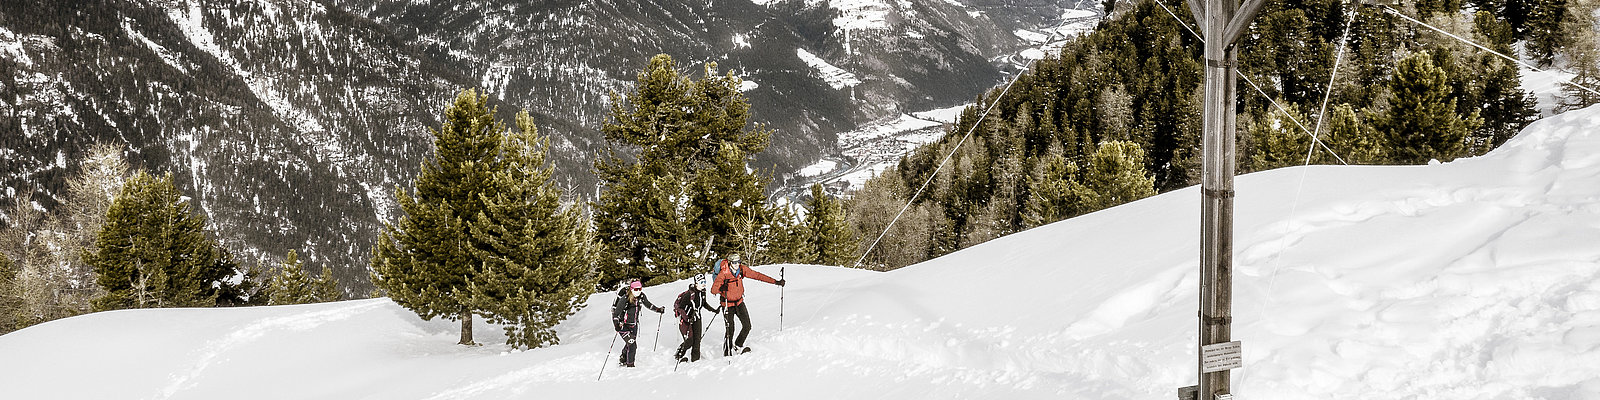 Schneeschuhwandern Frudiger | © TVB Tiroler Oberland / Rudi Wyhlidal